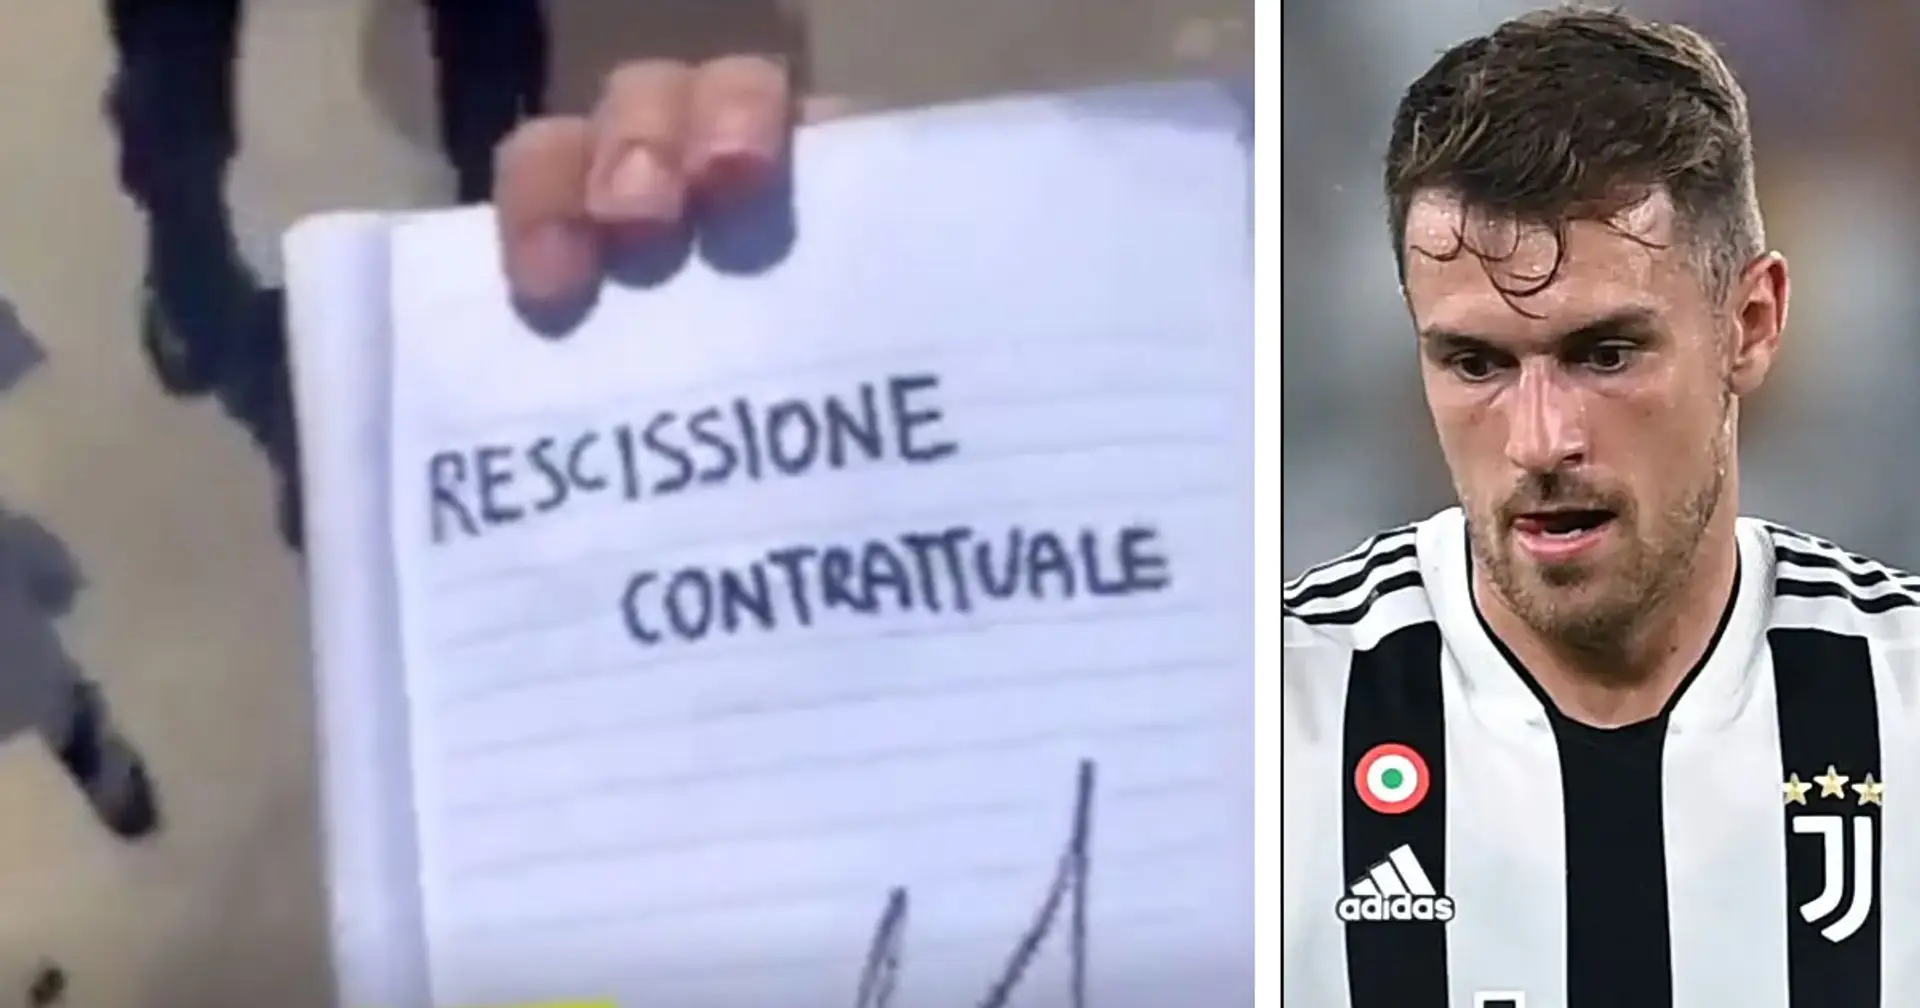 Il tifoso della Juventus inganna Aaron Ramsey facendogli firmare la rescissione del contratto